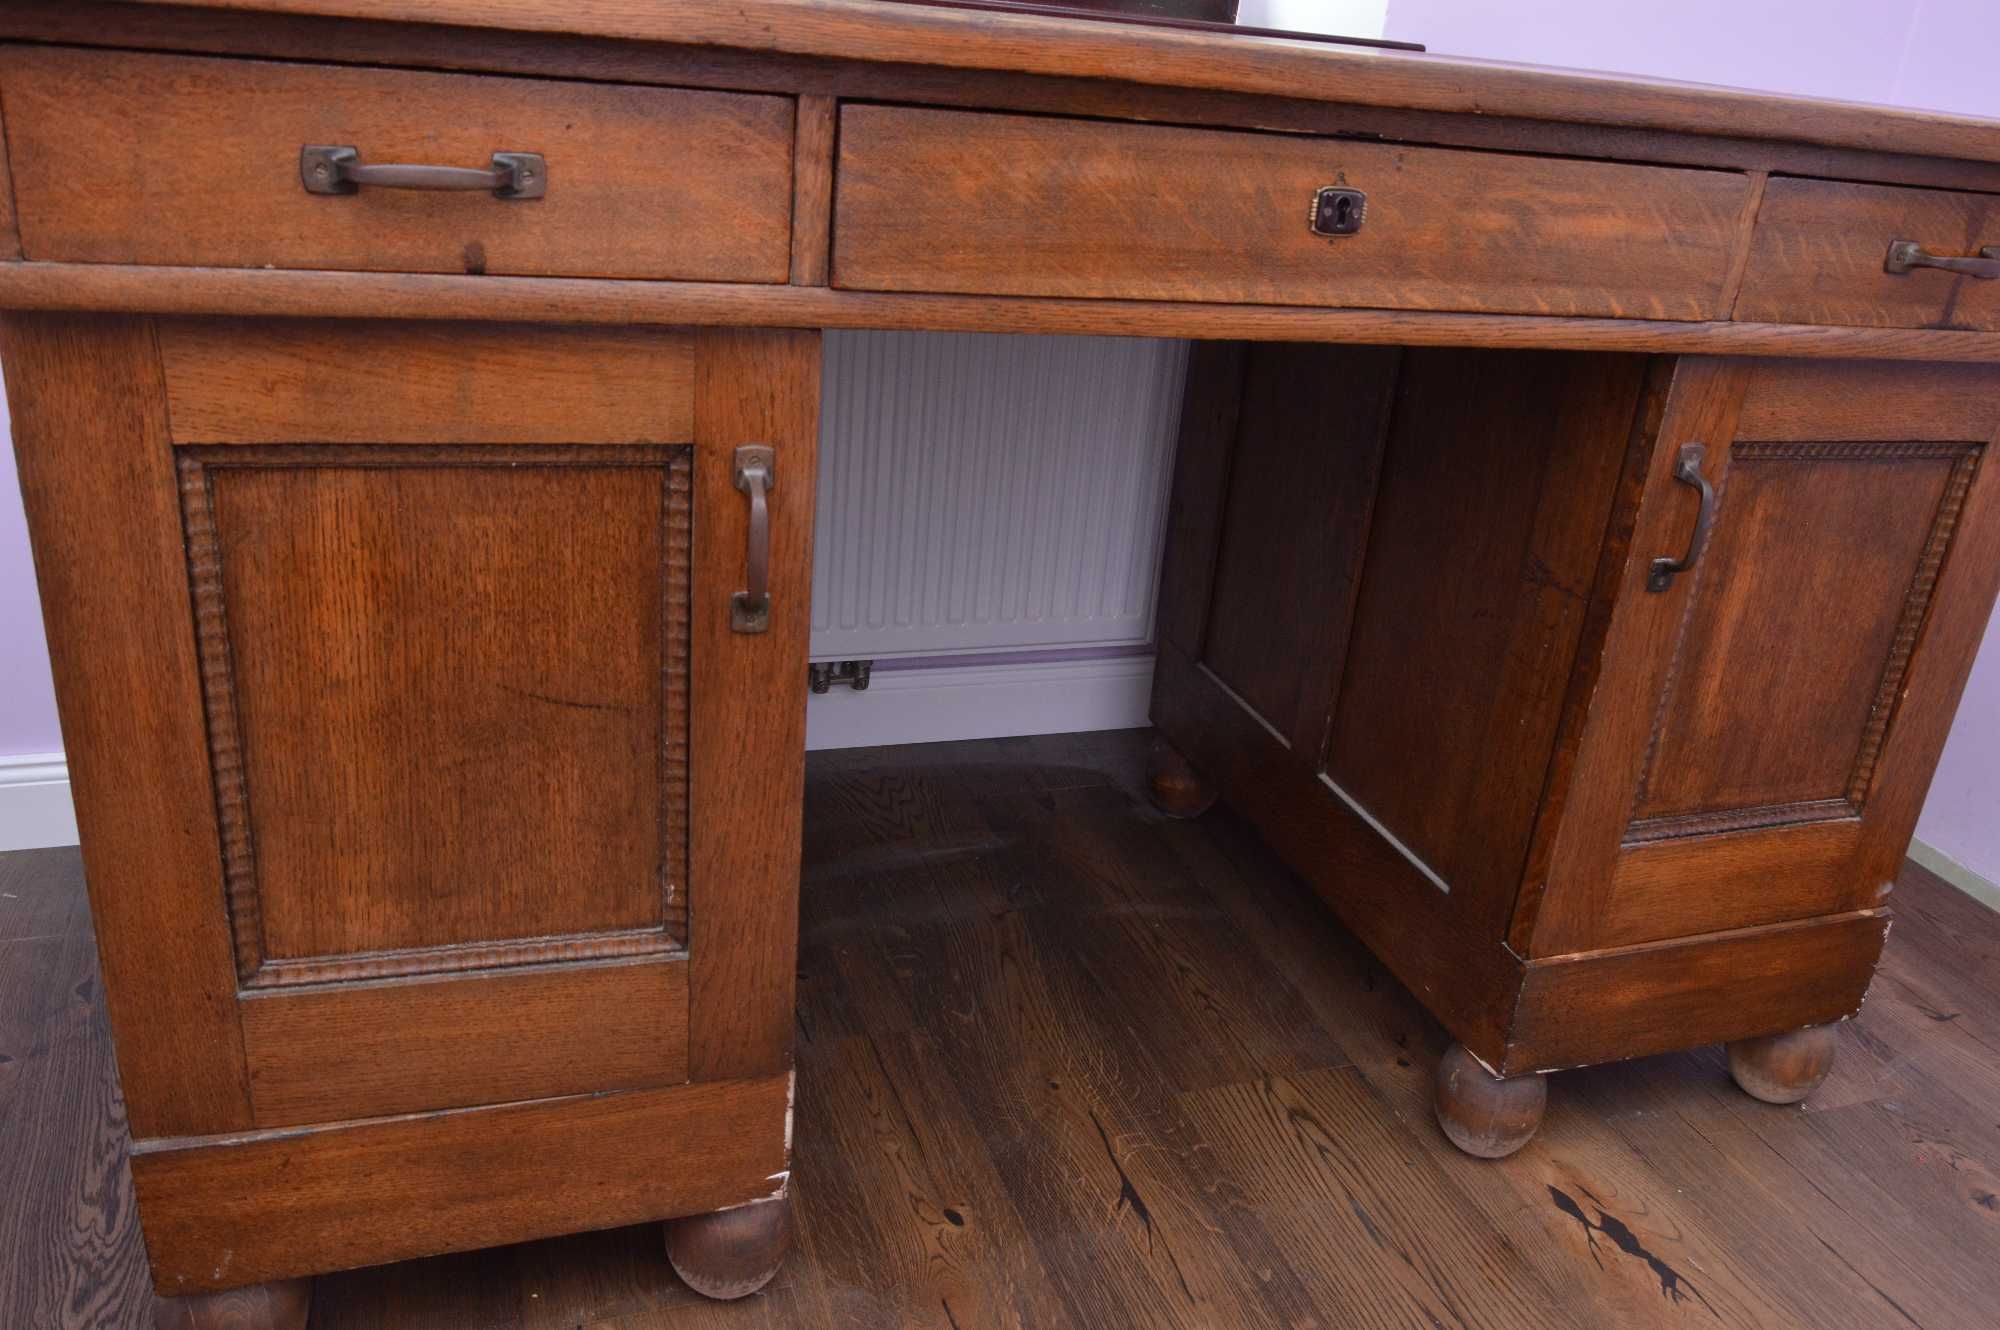 Stare biurko skandynawskie 150x80x89